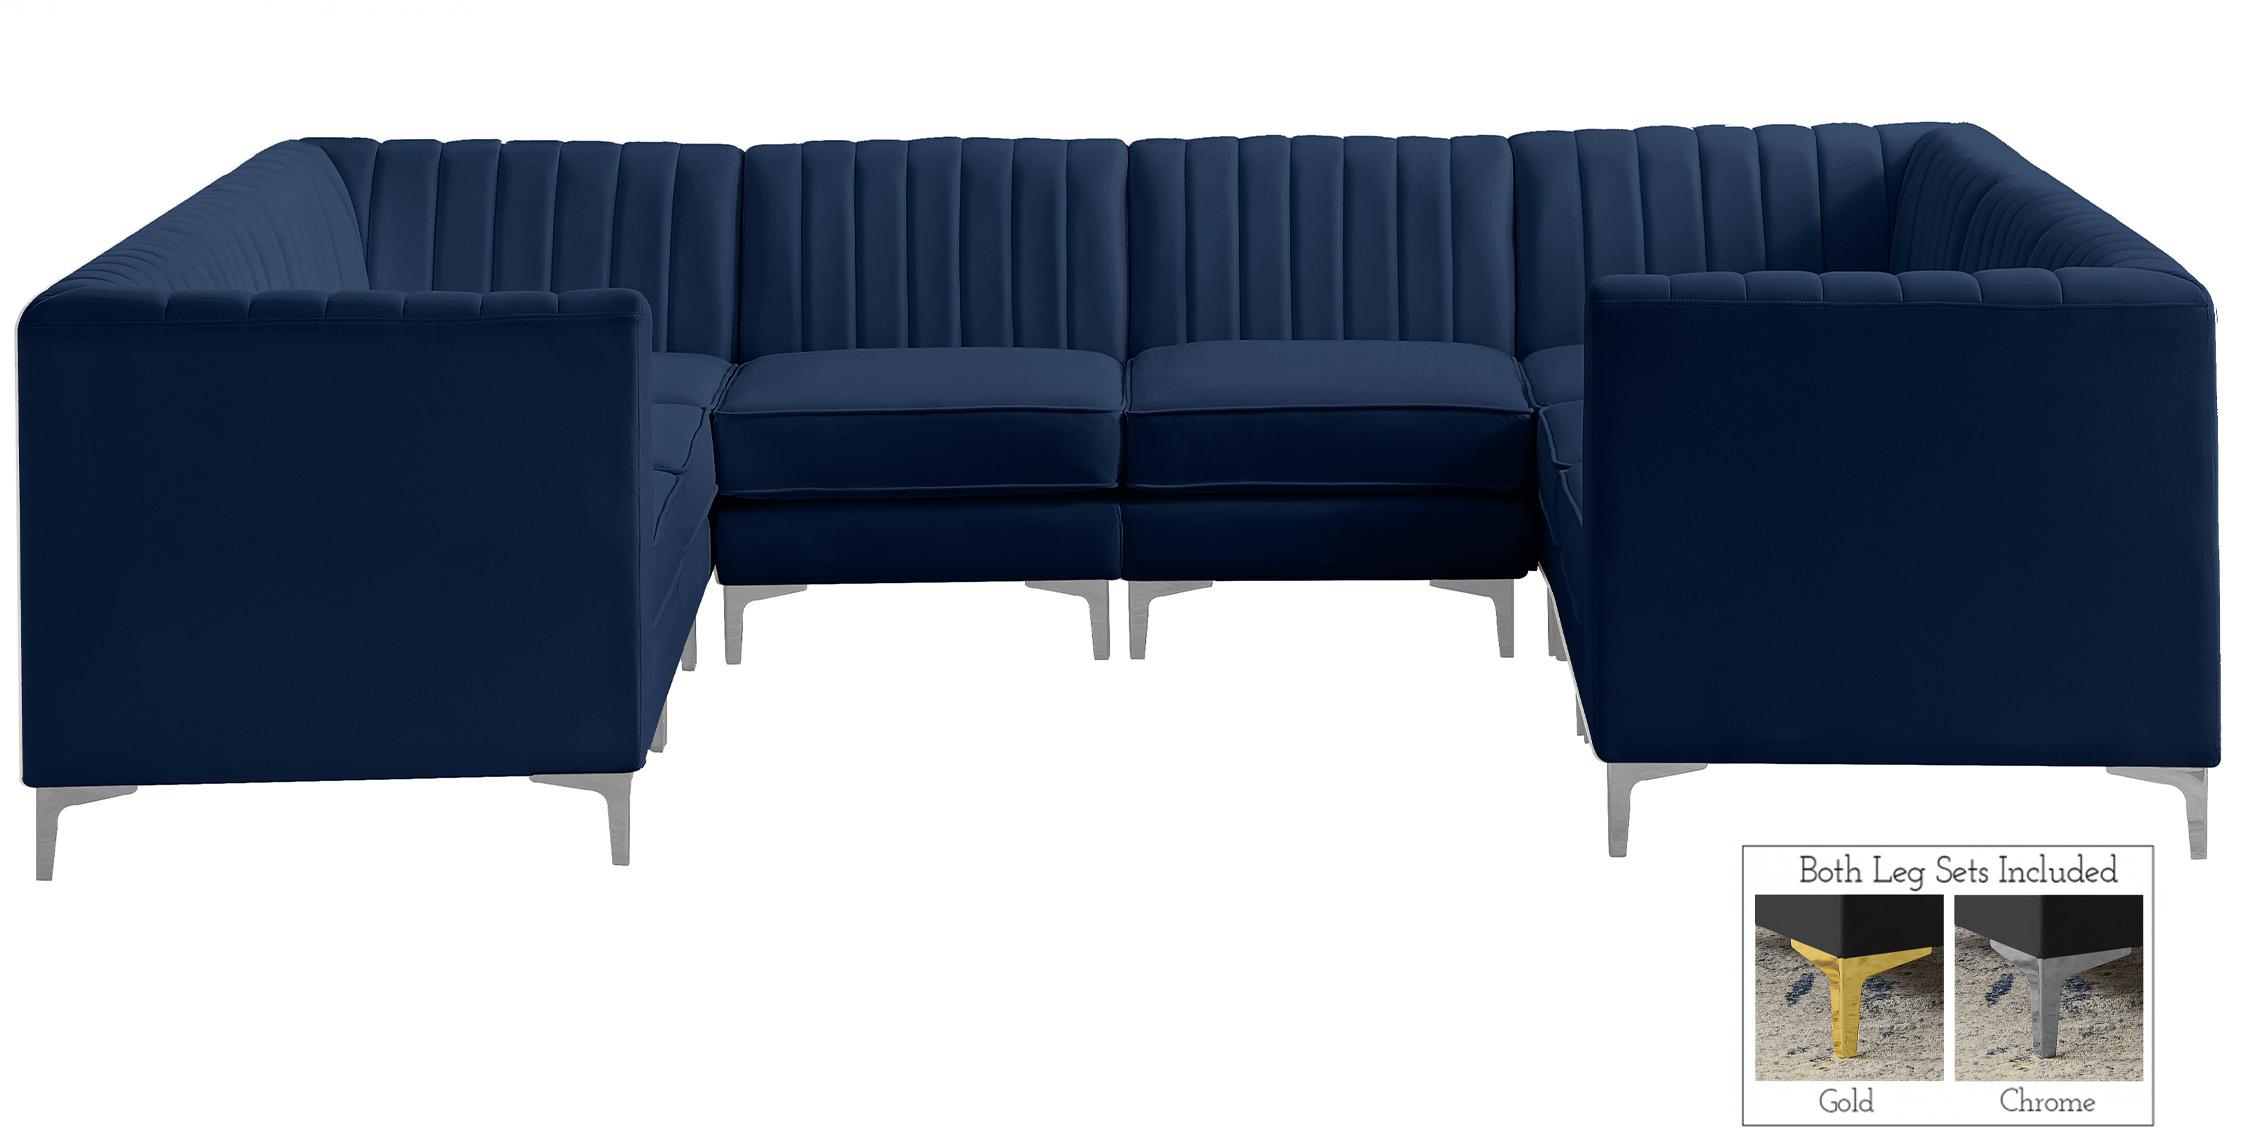 

    
604Navy-Sec8B Meridian Furniture Modular Sectional Sofa
